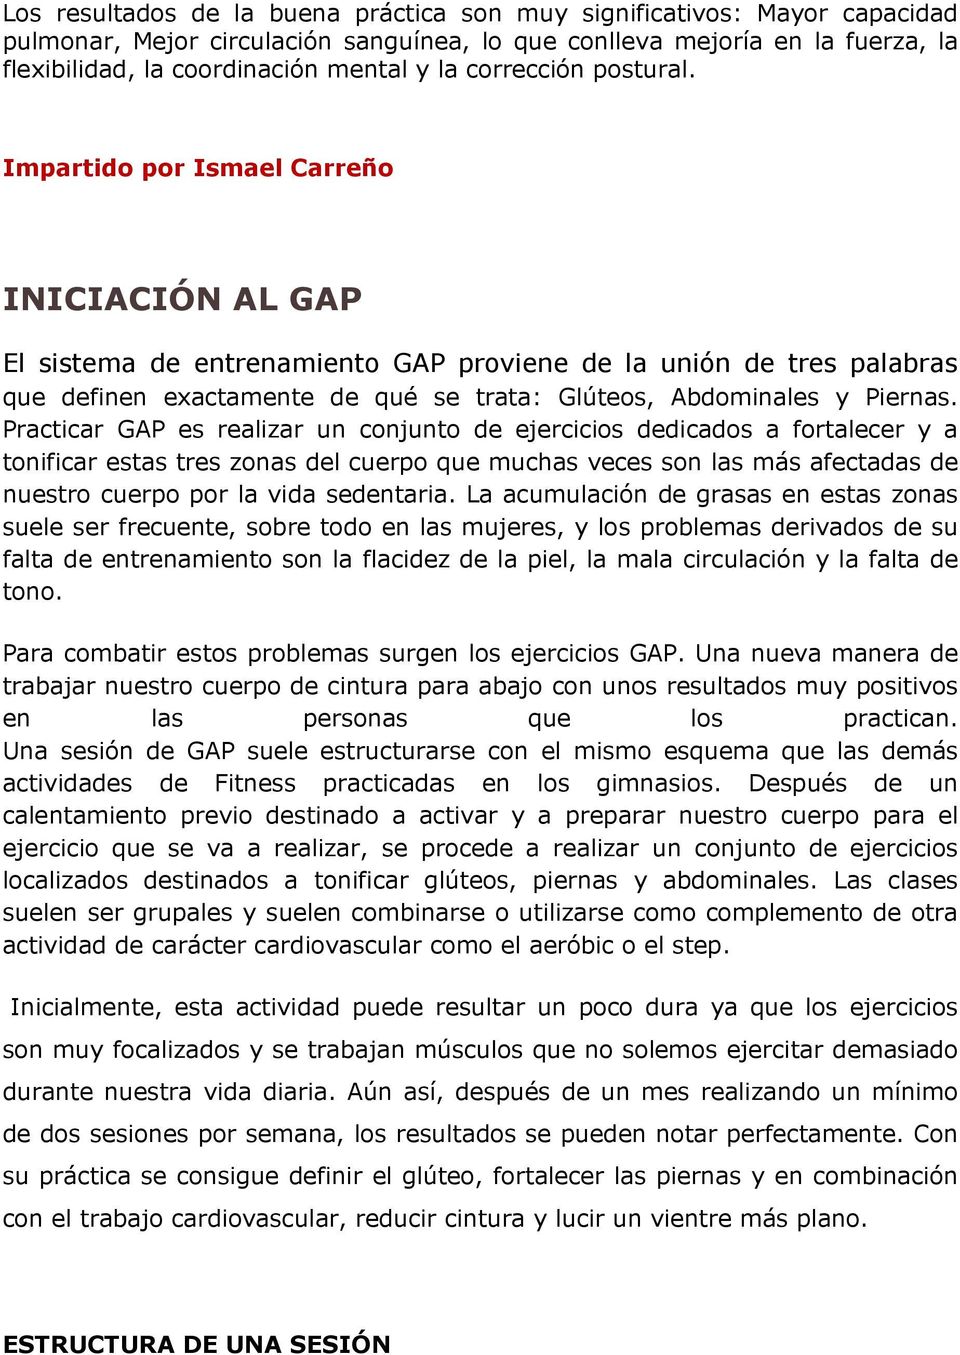 Impartido por Ismael Carreño INICIACIÓN AL GAP El sistema de entrenamiento GAP proviene de la unión de tres palabras que definen exactamente de qué se trata: Glúteos, Abdominales y Piernas.